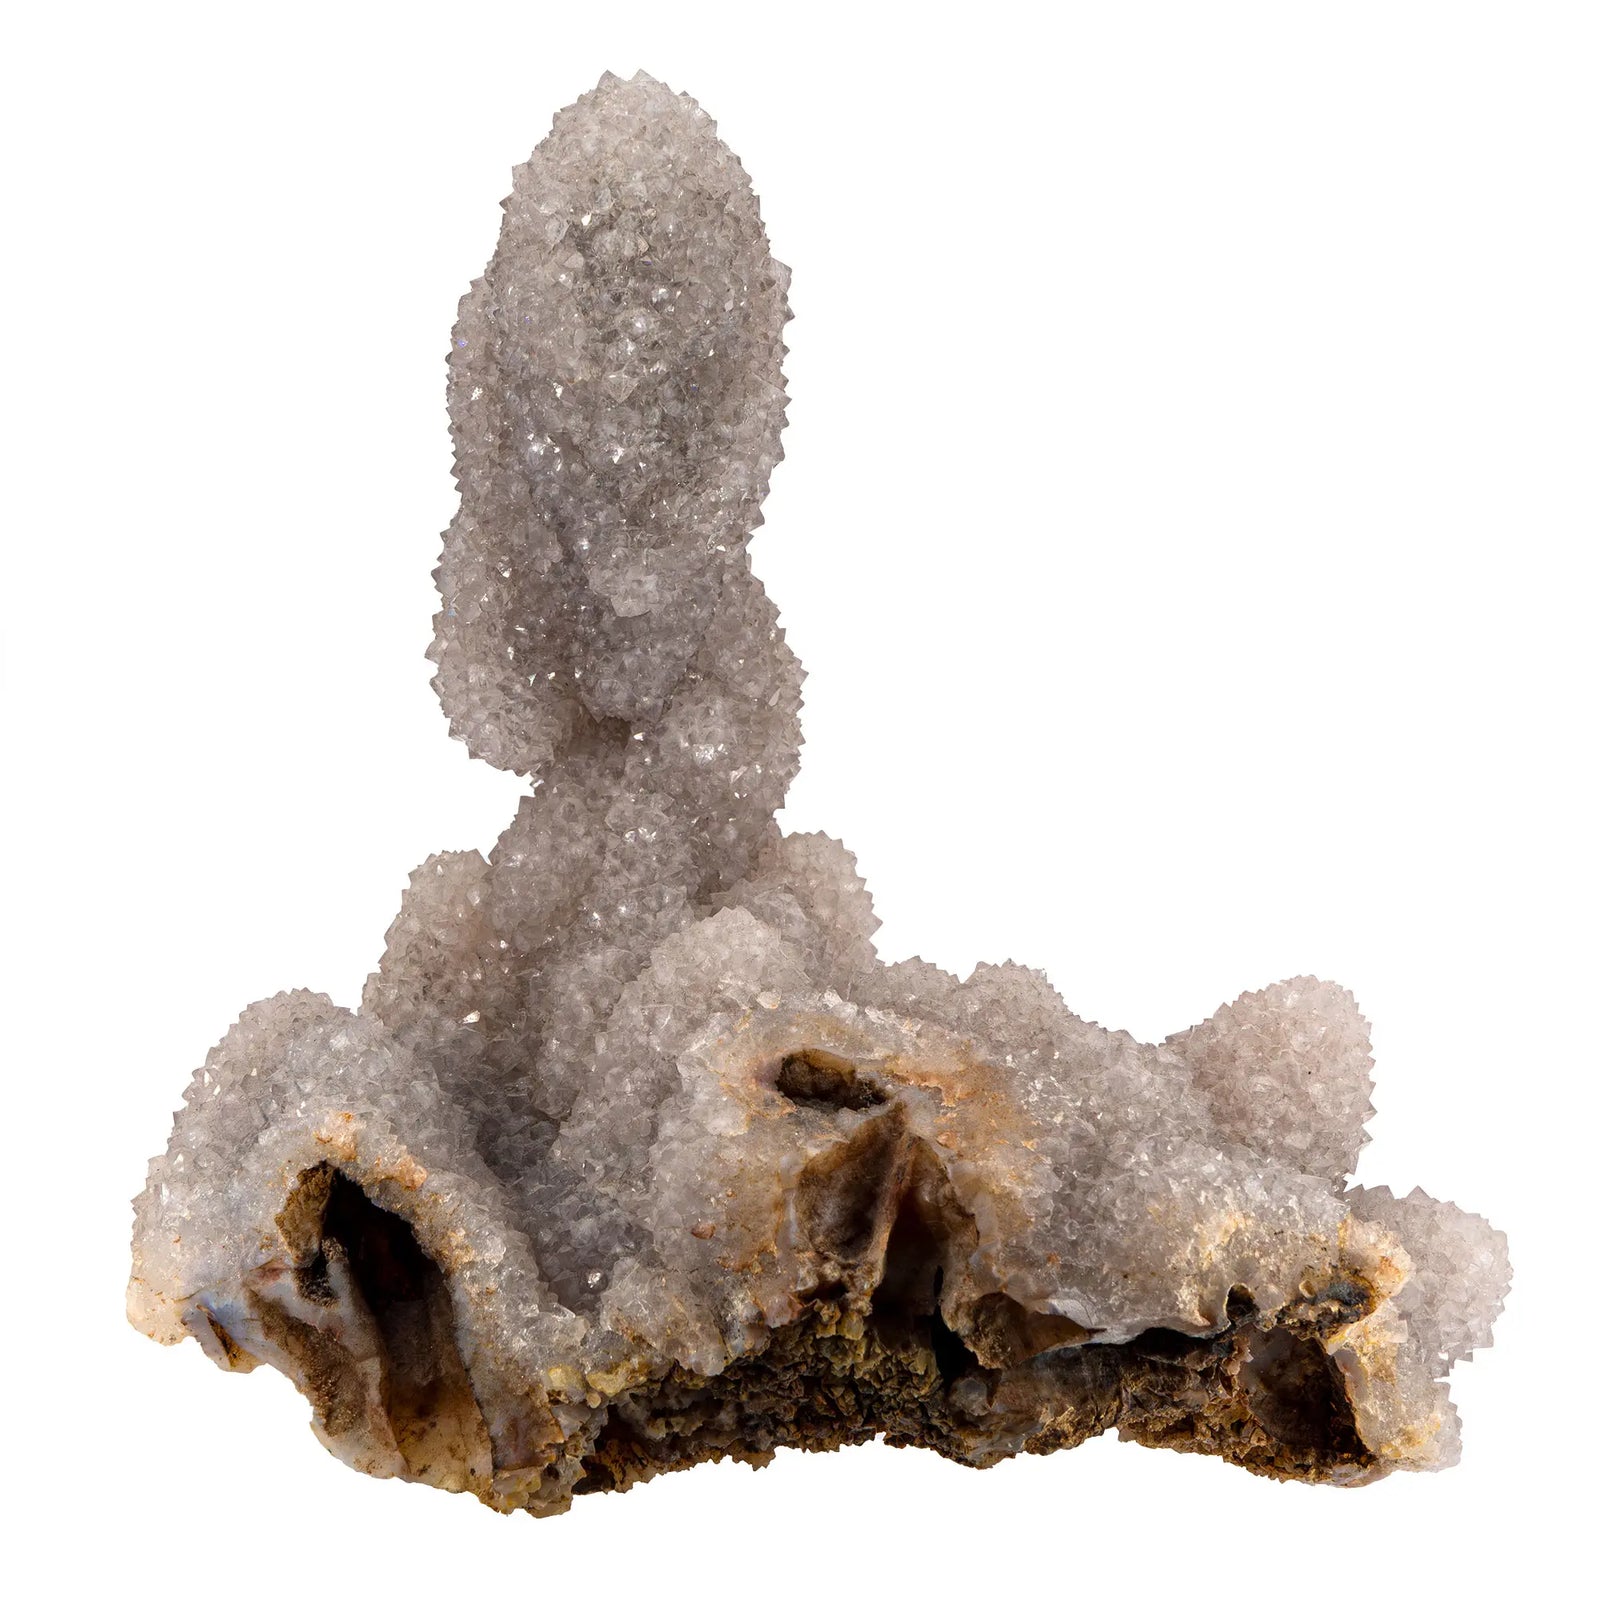 Cristal de roche stalactite brut - 2.07kg - CRISTAL SOURCES